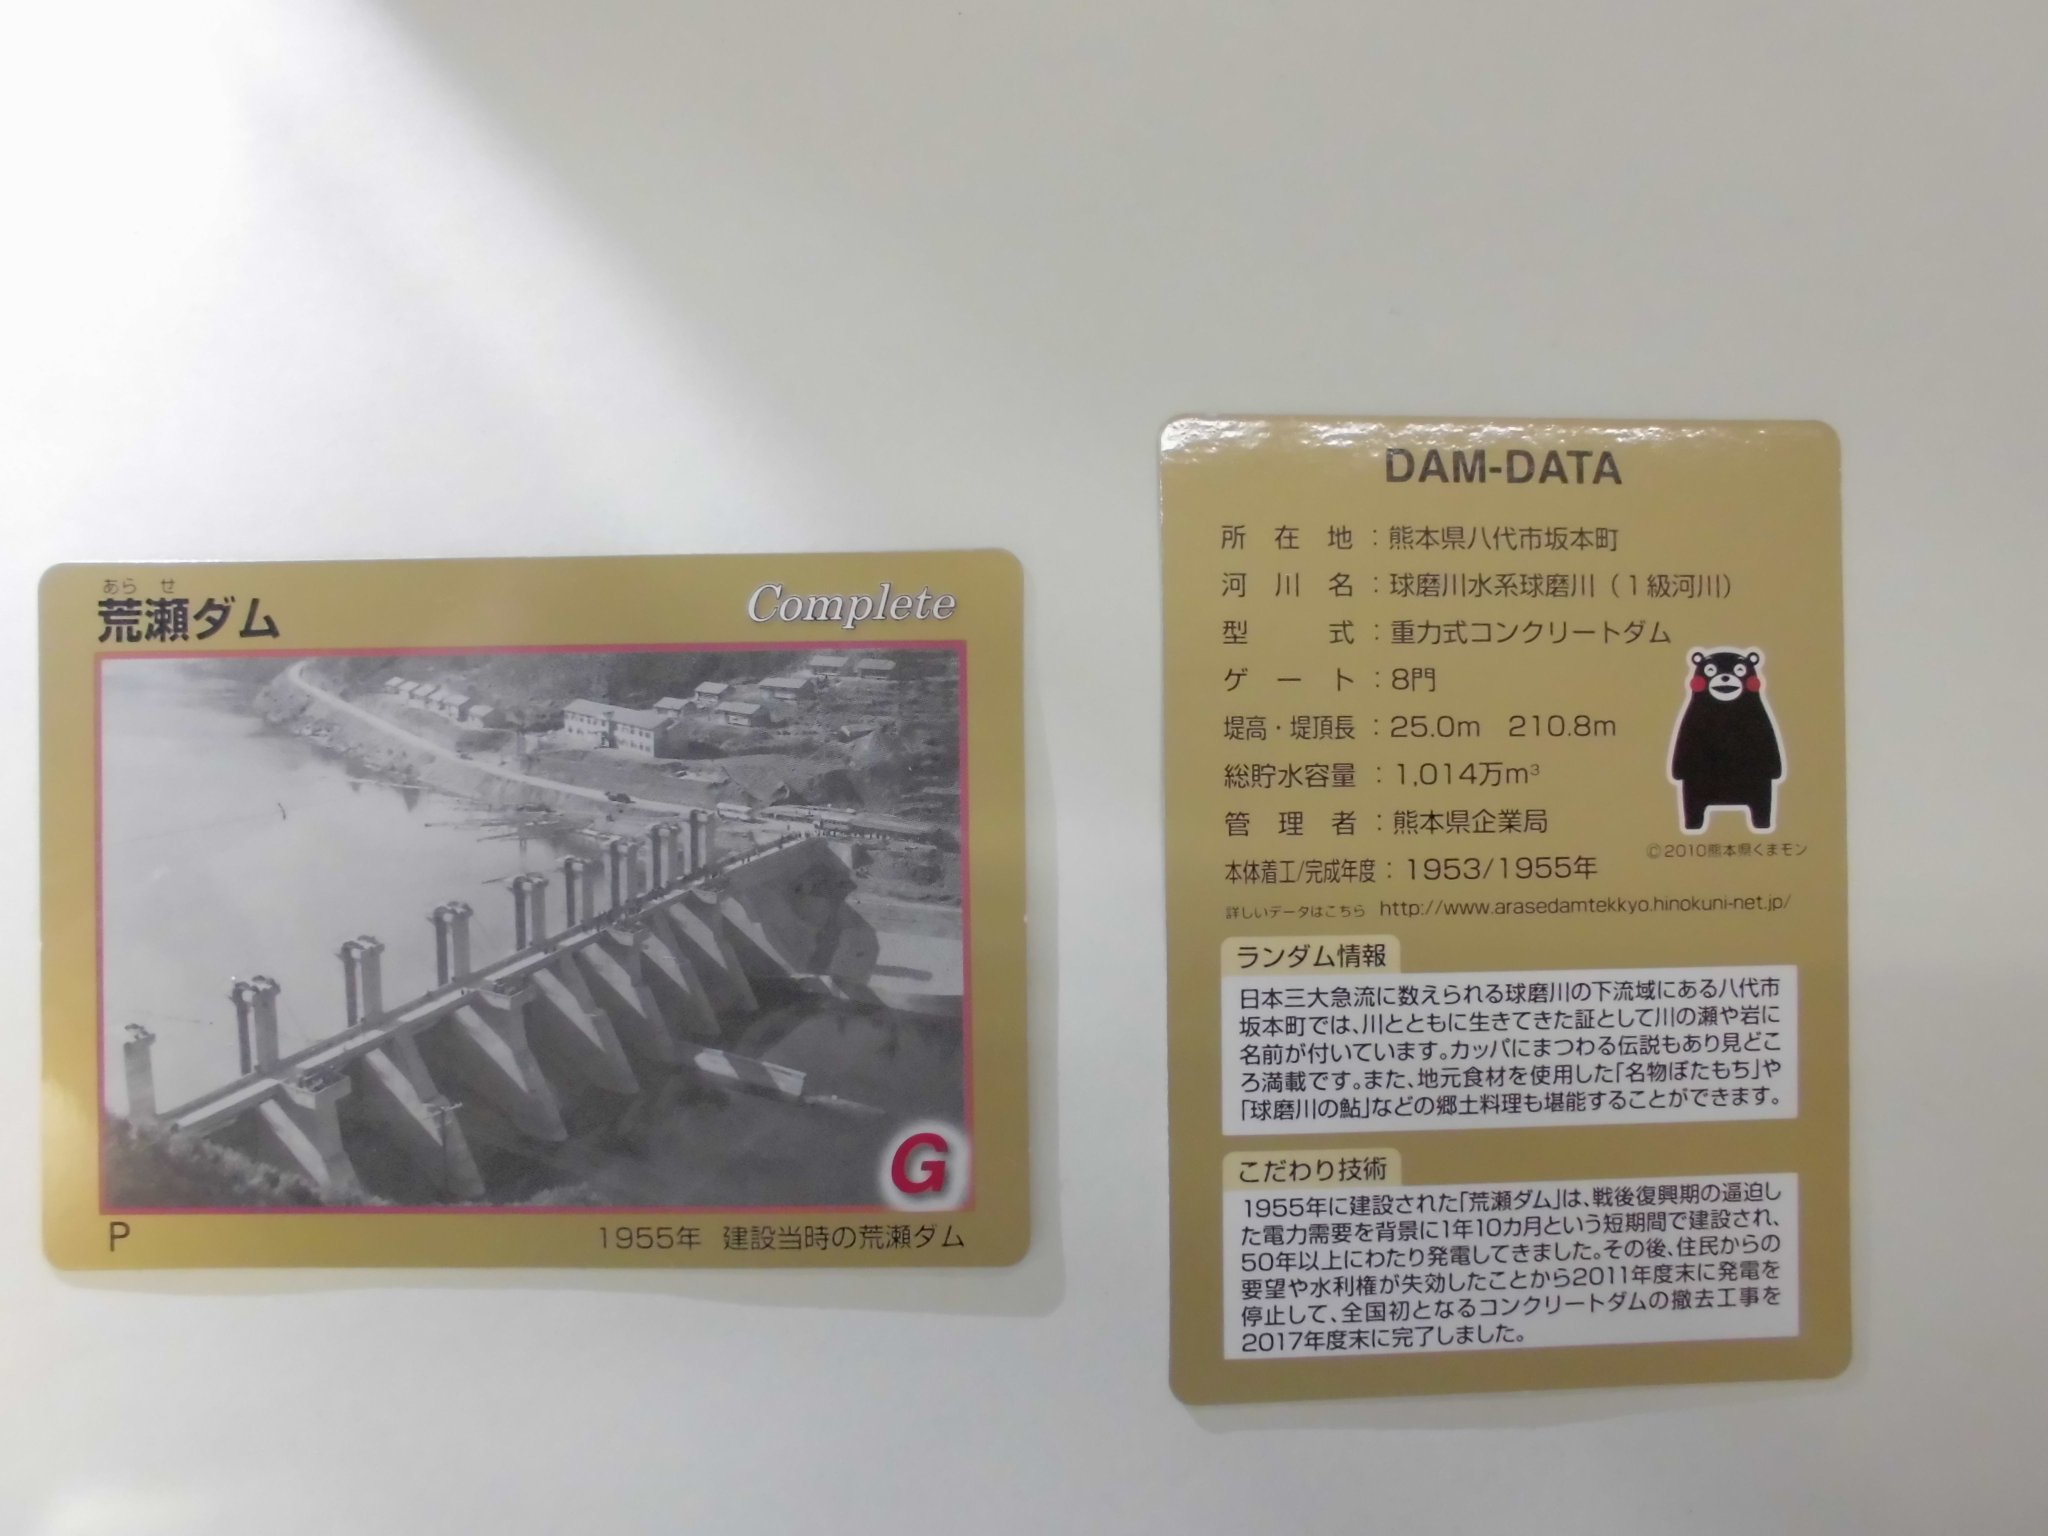 熊本県広報グループ on Twitter: "＜荒瀬ダムカードを配布開始！＞企業局で管理している3つのダム（幸野、船津、都呂々）のダムカードを